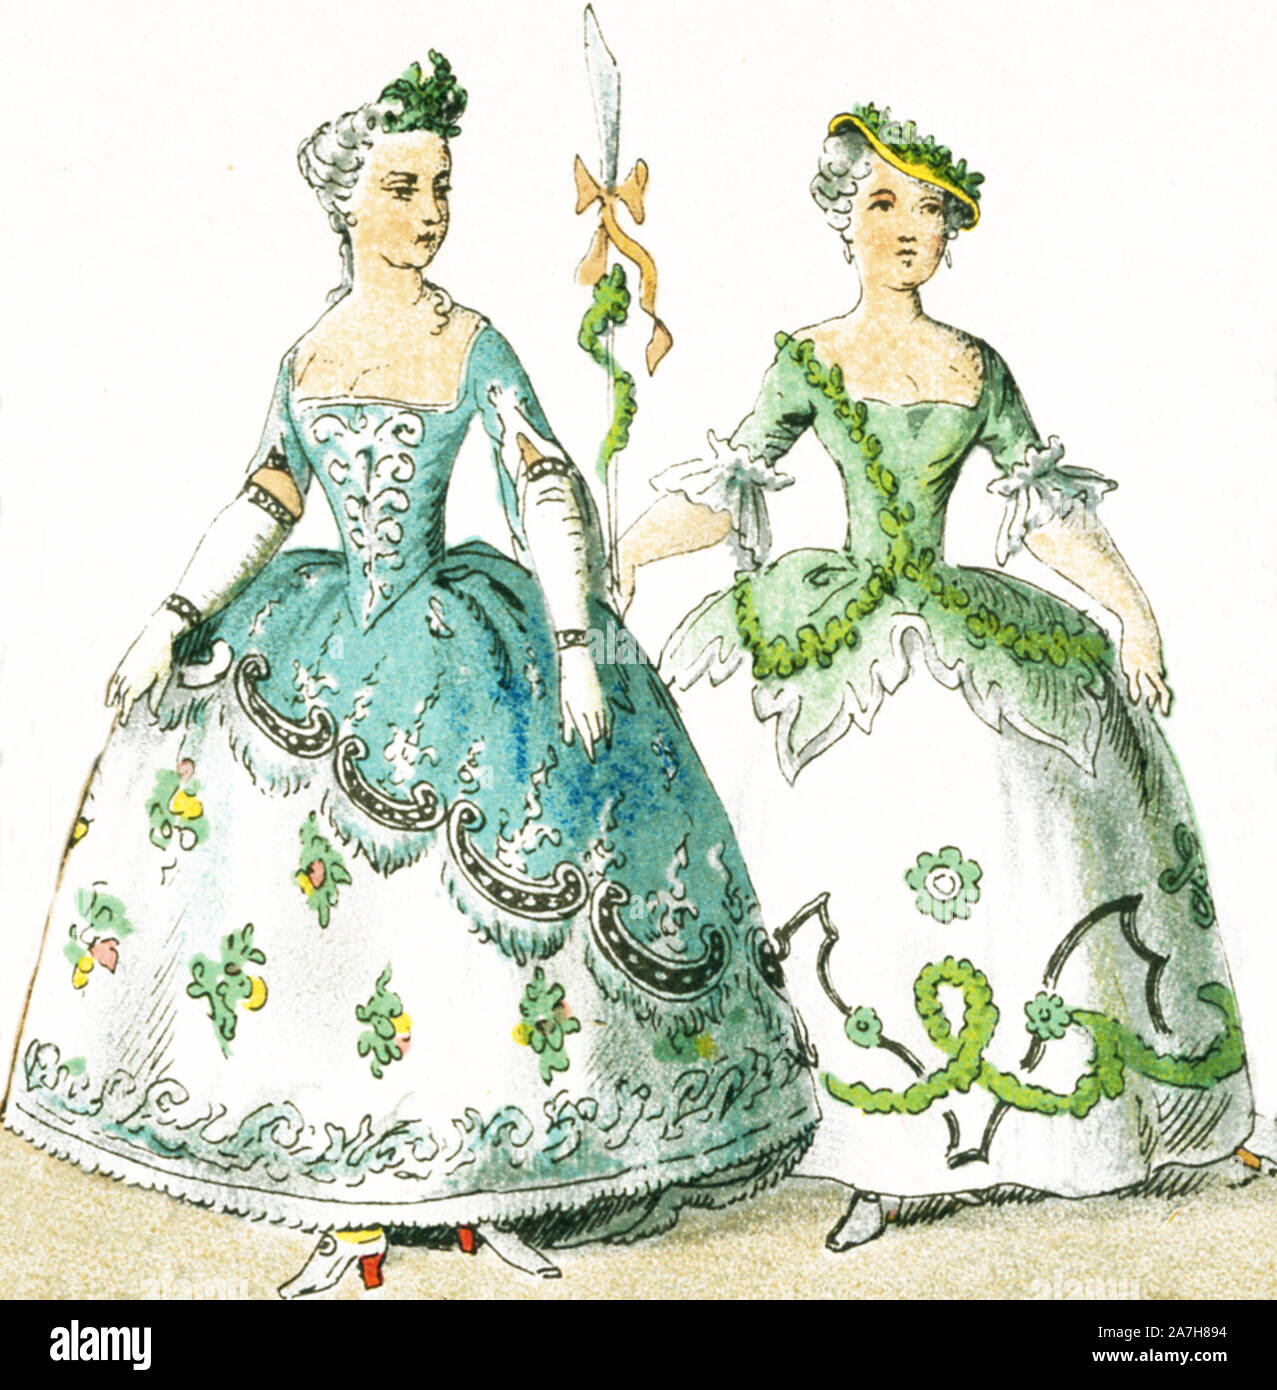 Qui illustrati sono due donne francesi tra il 1750 e il 1800. Essi sono da sinistra a destra: due costumi di sfere e maschere. Questa illustrazione risale al 1882. Foto Stock